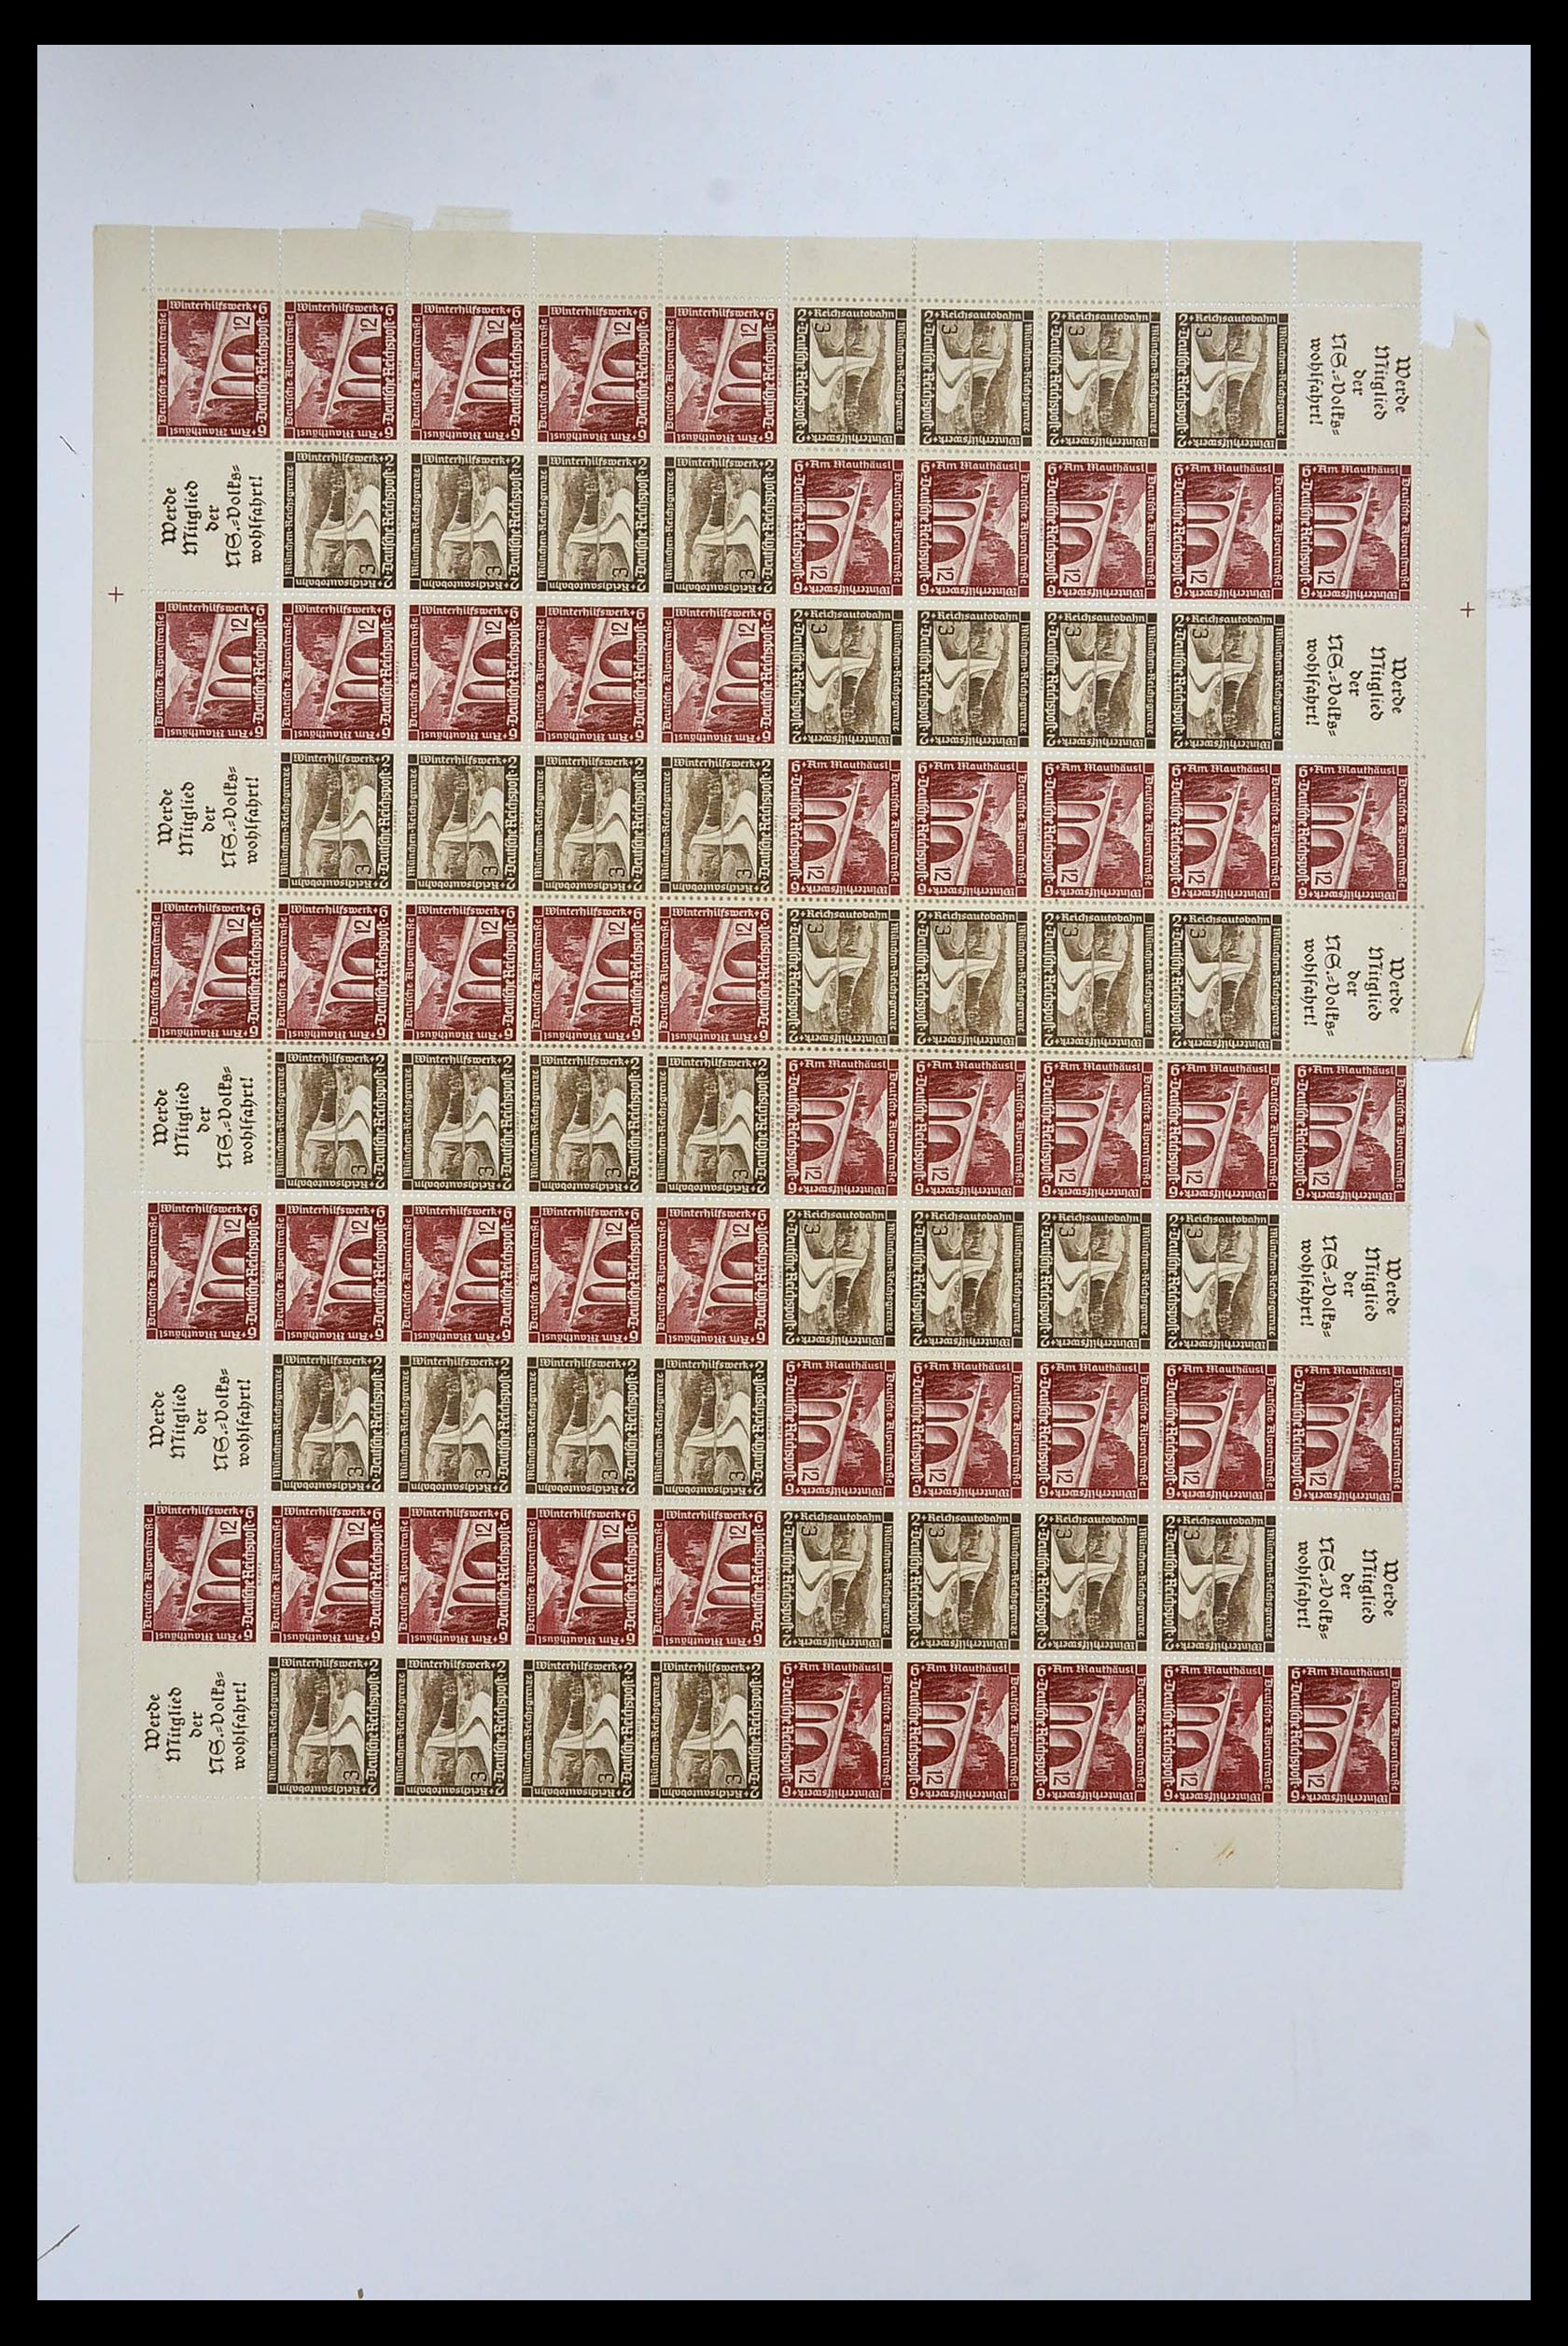 34164 064 - Stamp collection 34164 German Reich Markenheftchenbogen 1933-1942.